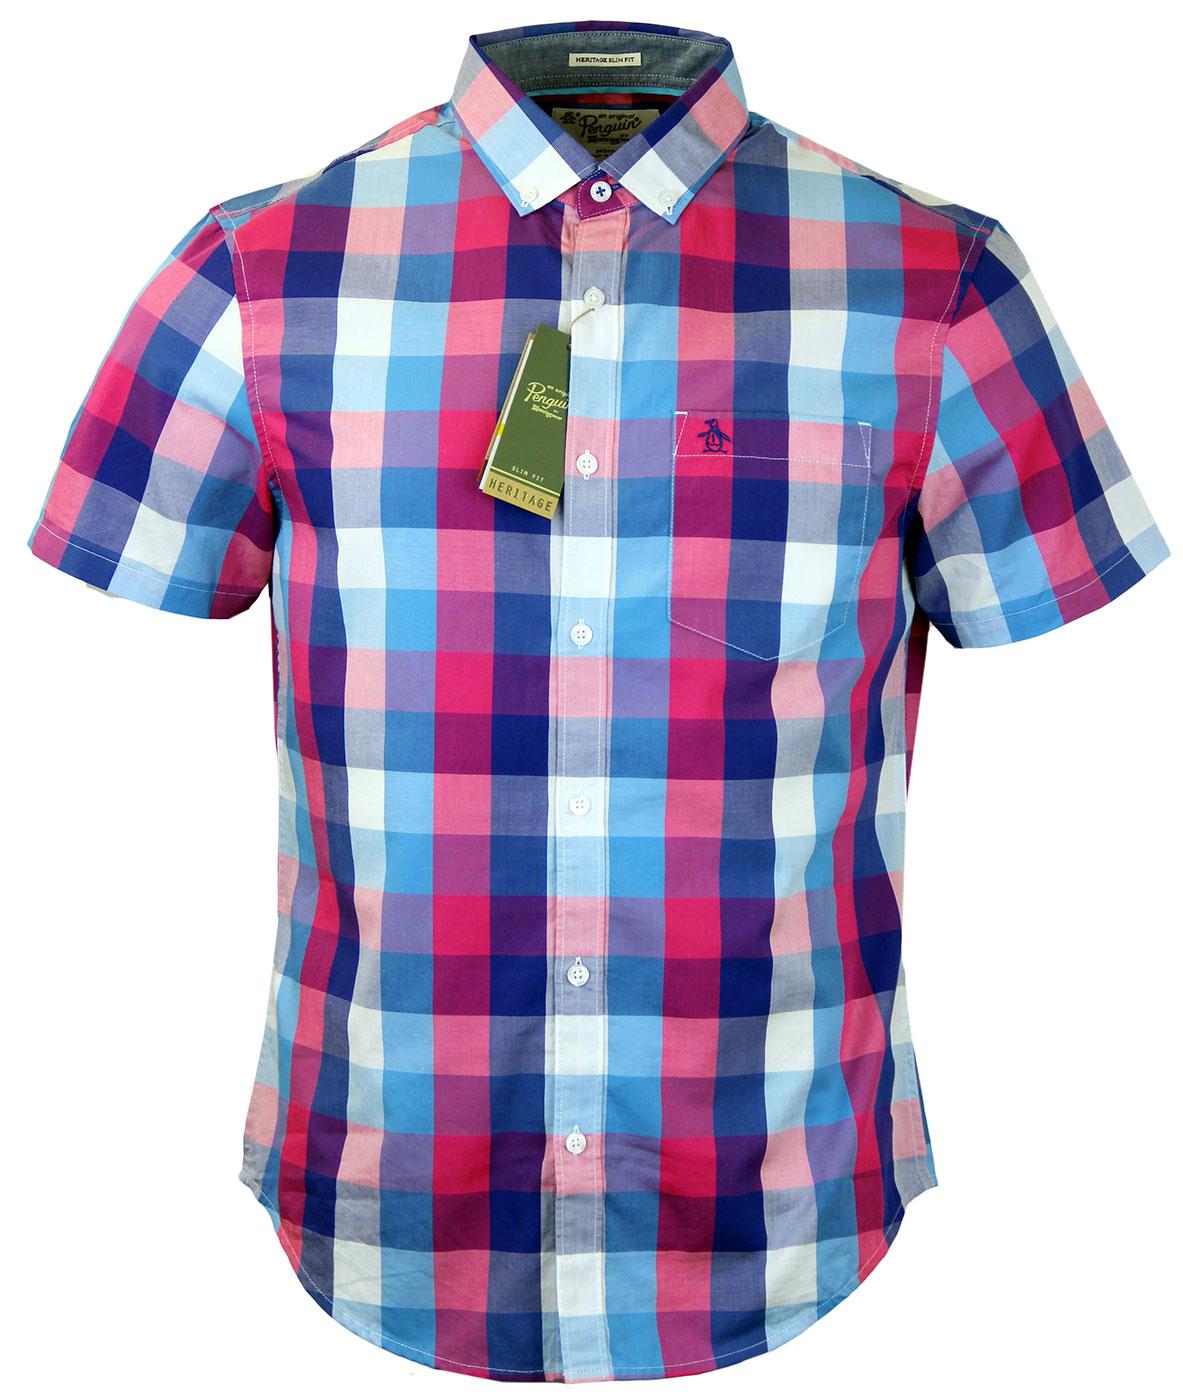 Flive ORIGINAL PENGUIN 3 Color Block Gingham Shirt